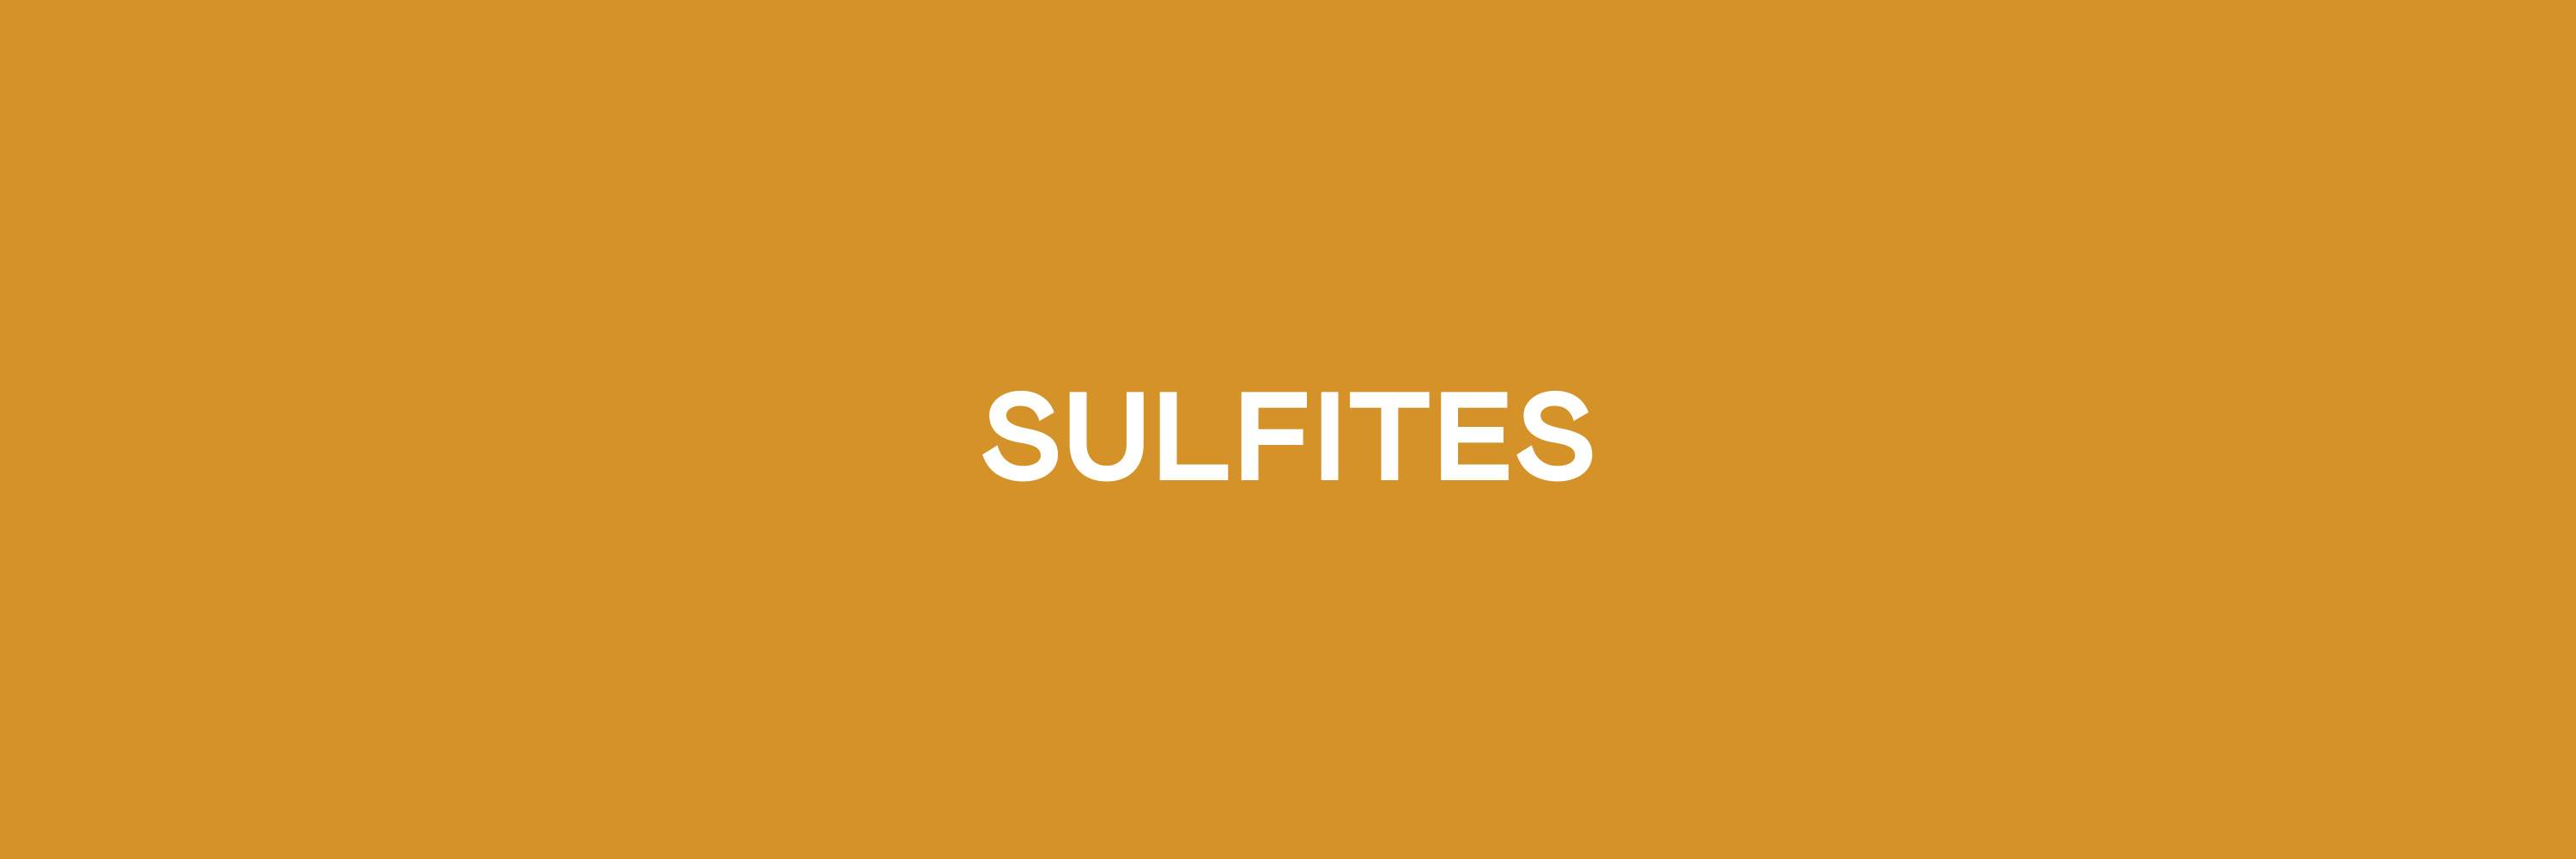 Sulfites